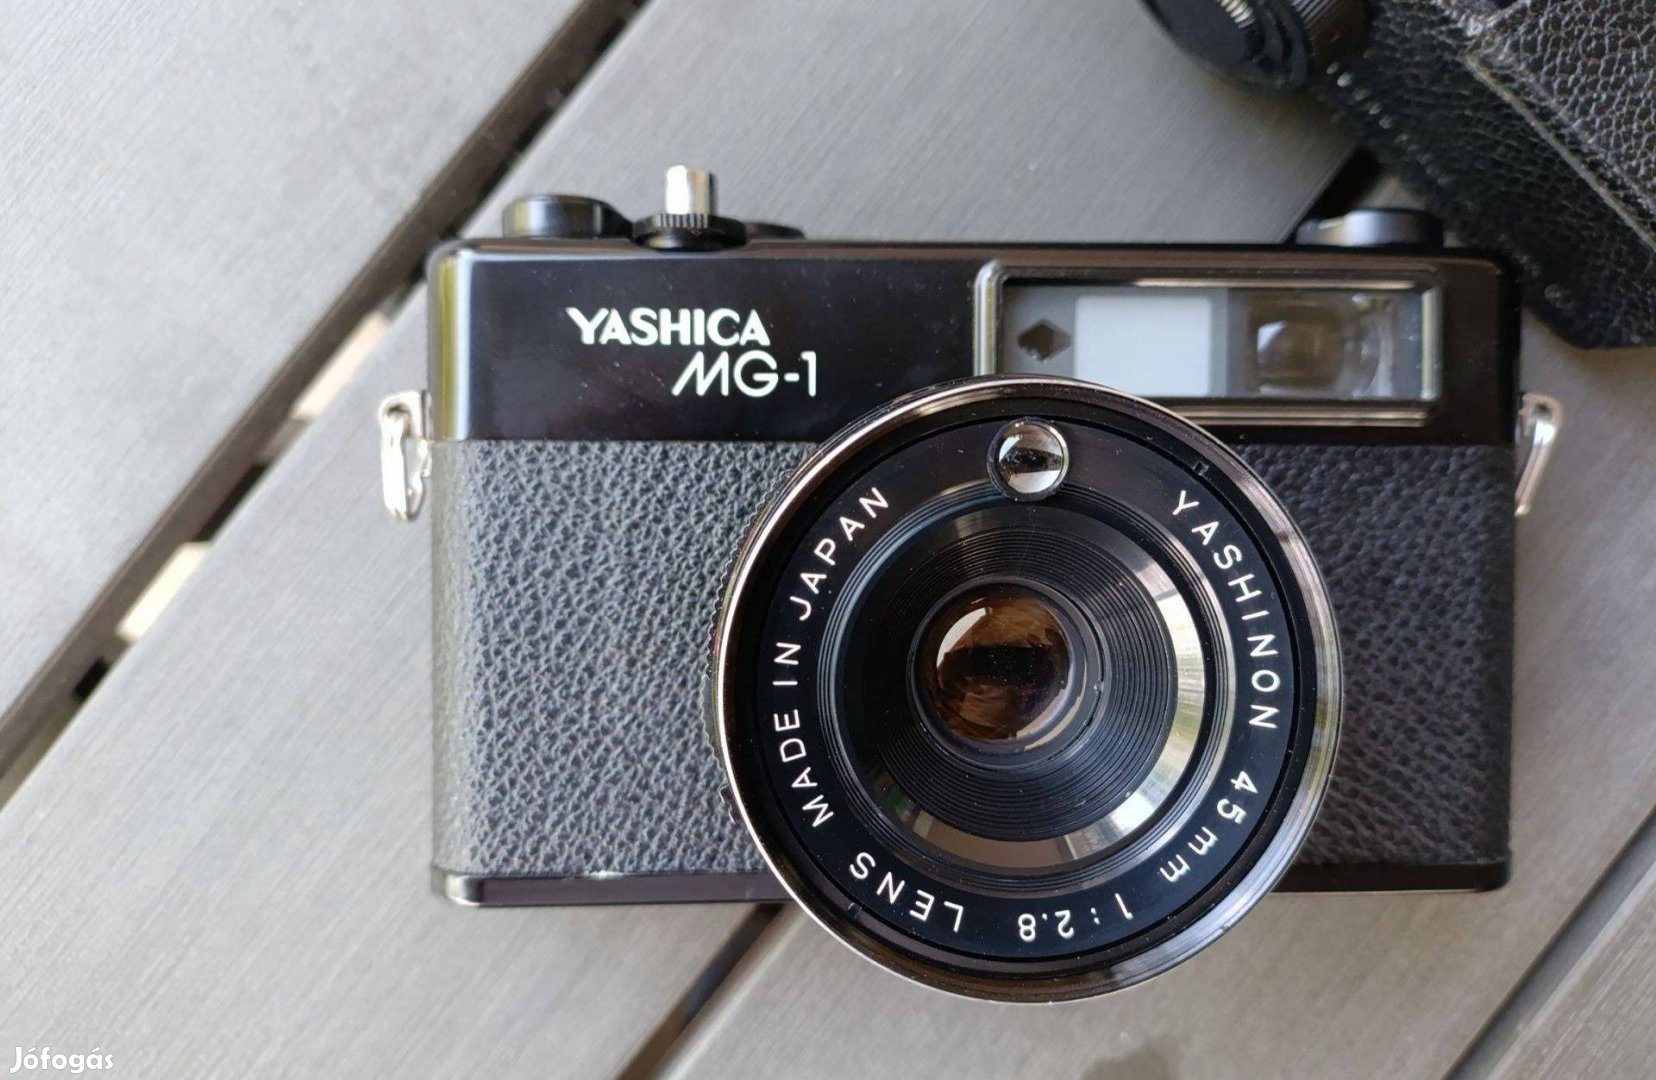 Eladó szép állapotú Yashica MG-1 filmes fényképezőgép